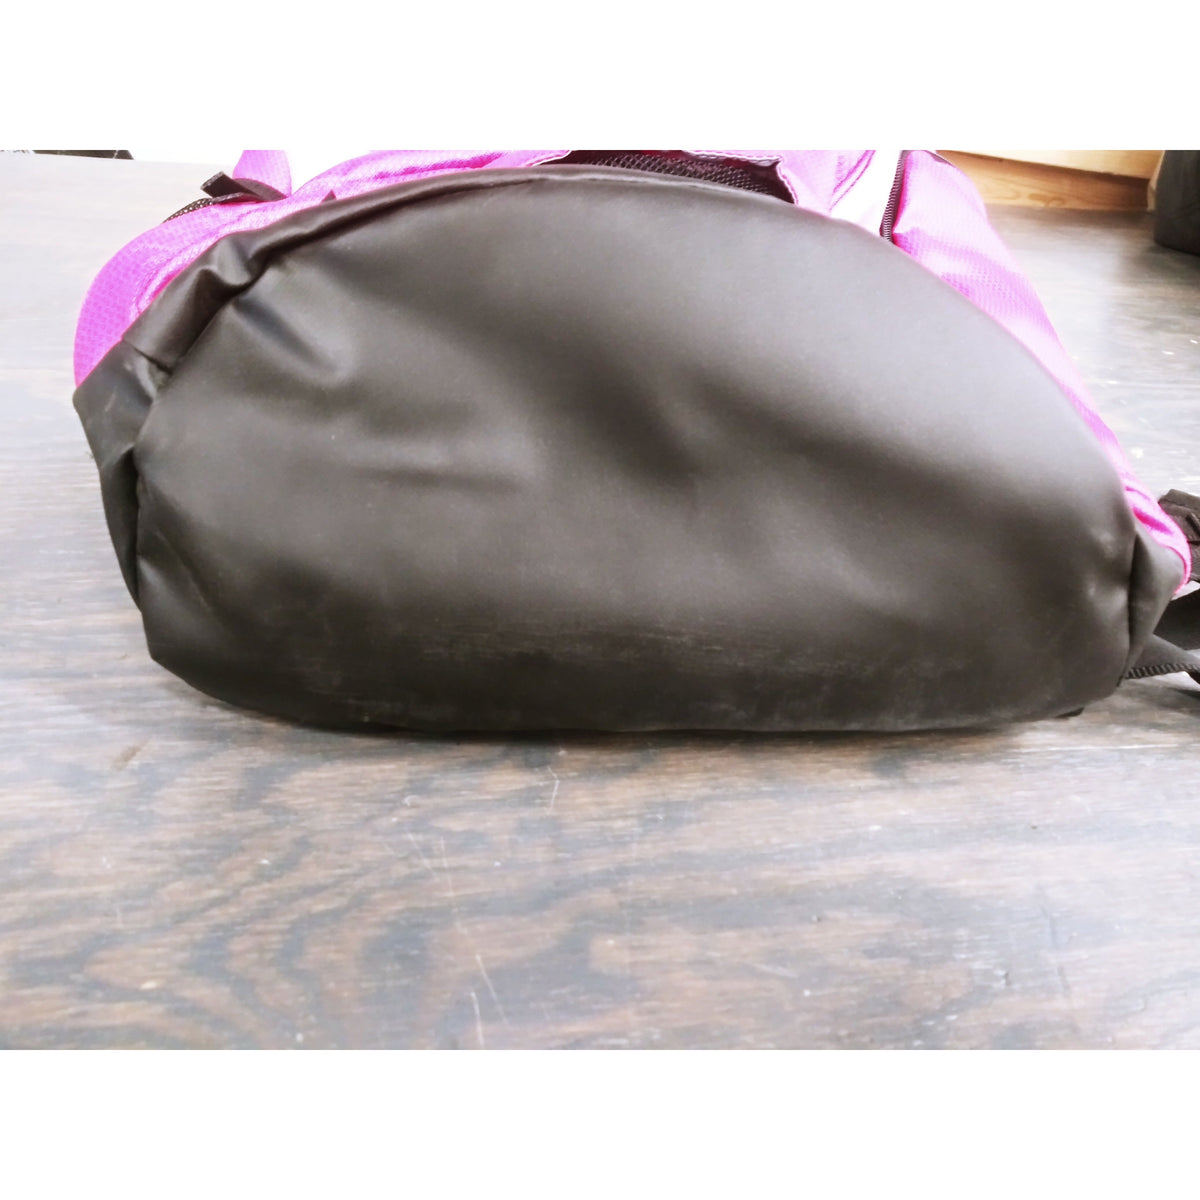 Speedo Teamster Backpack - Fuchsia Purple/Azalea Pink - 35-Liter - Used - Acceptable